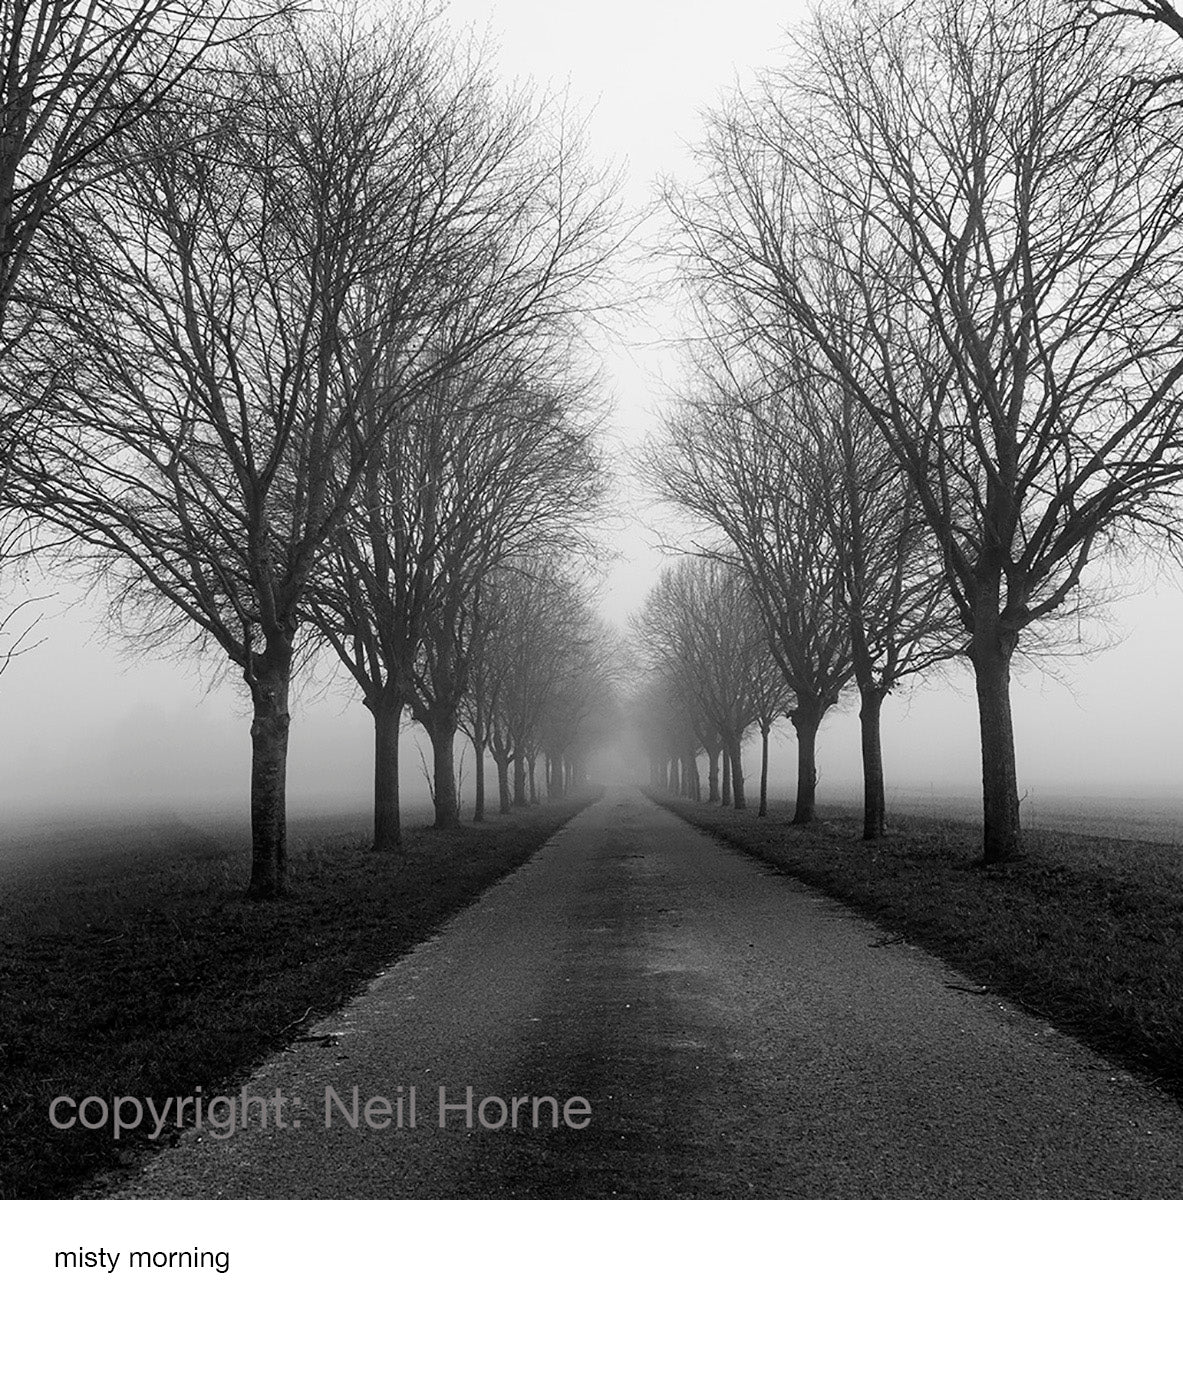 Misty Morning by Neil Horne